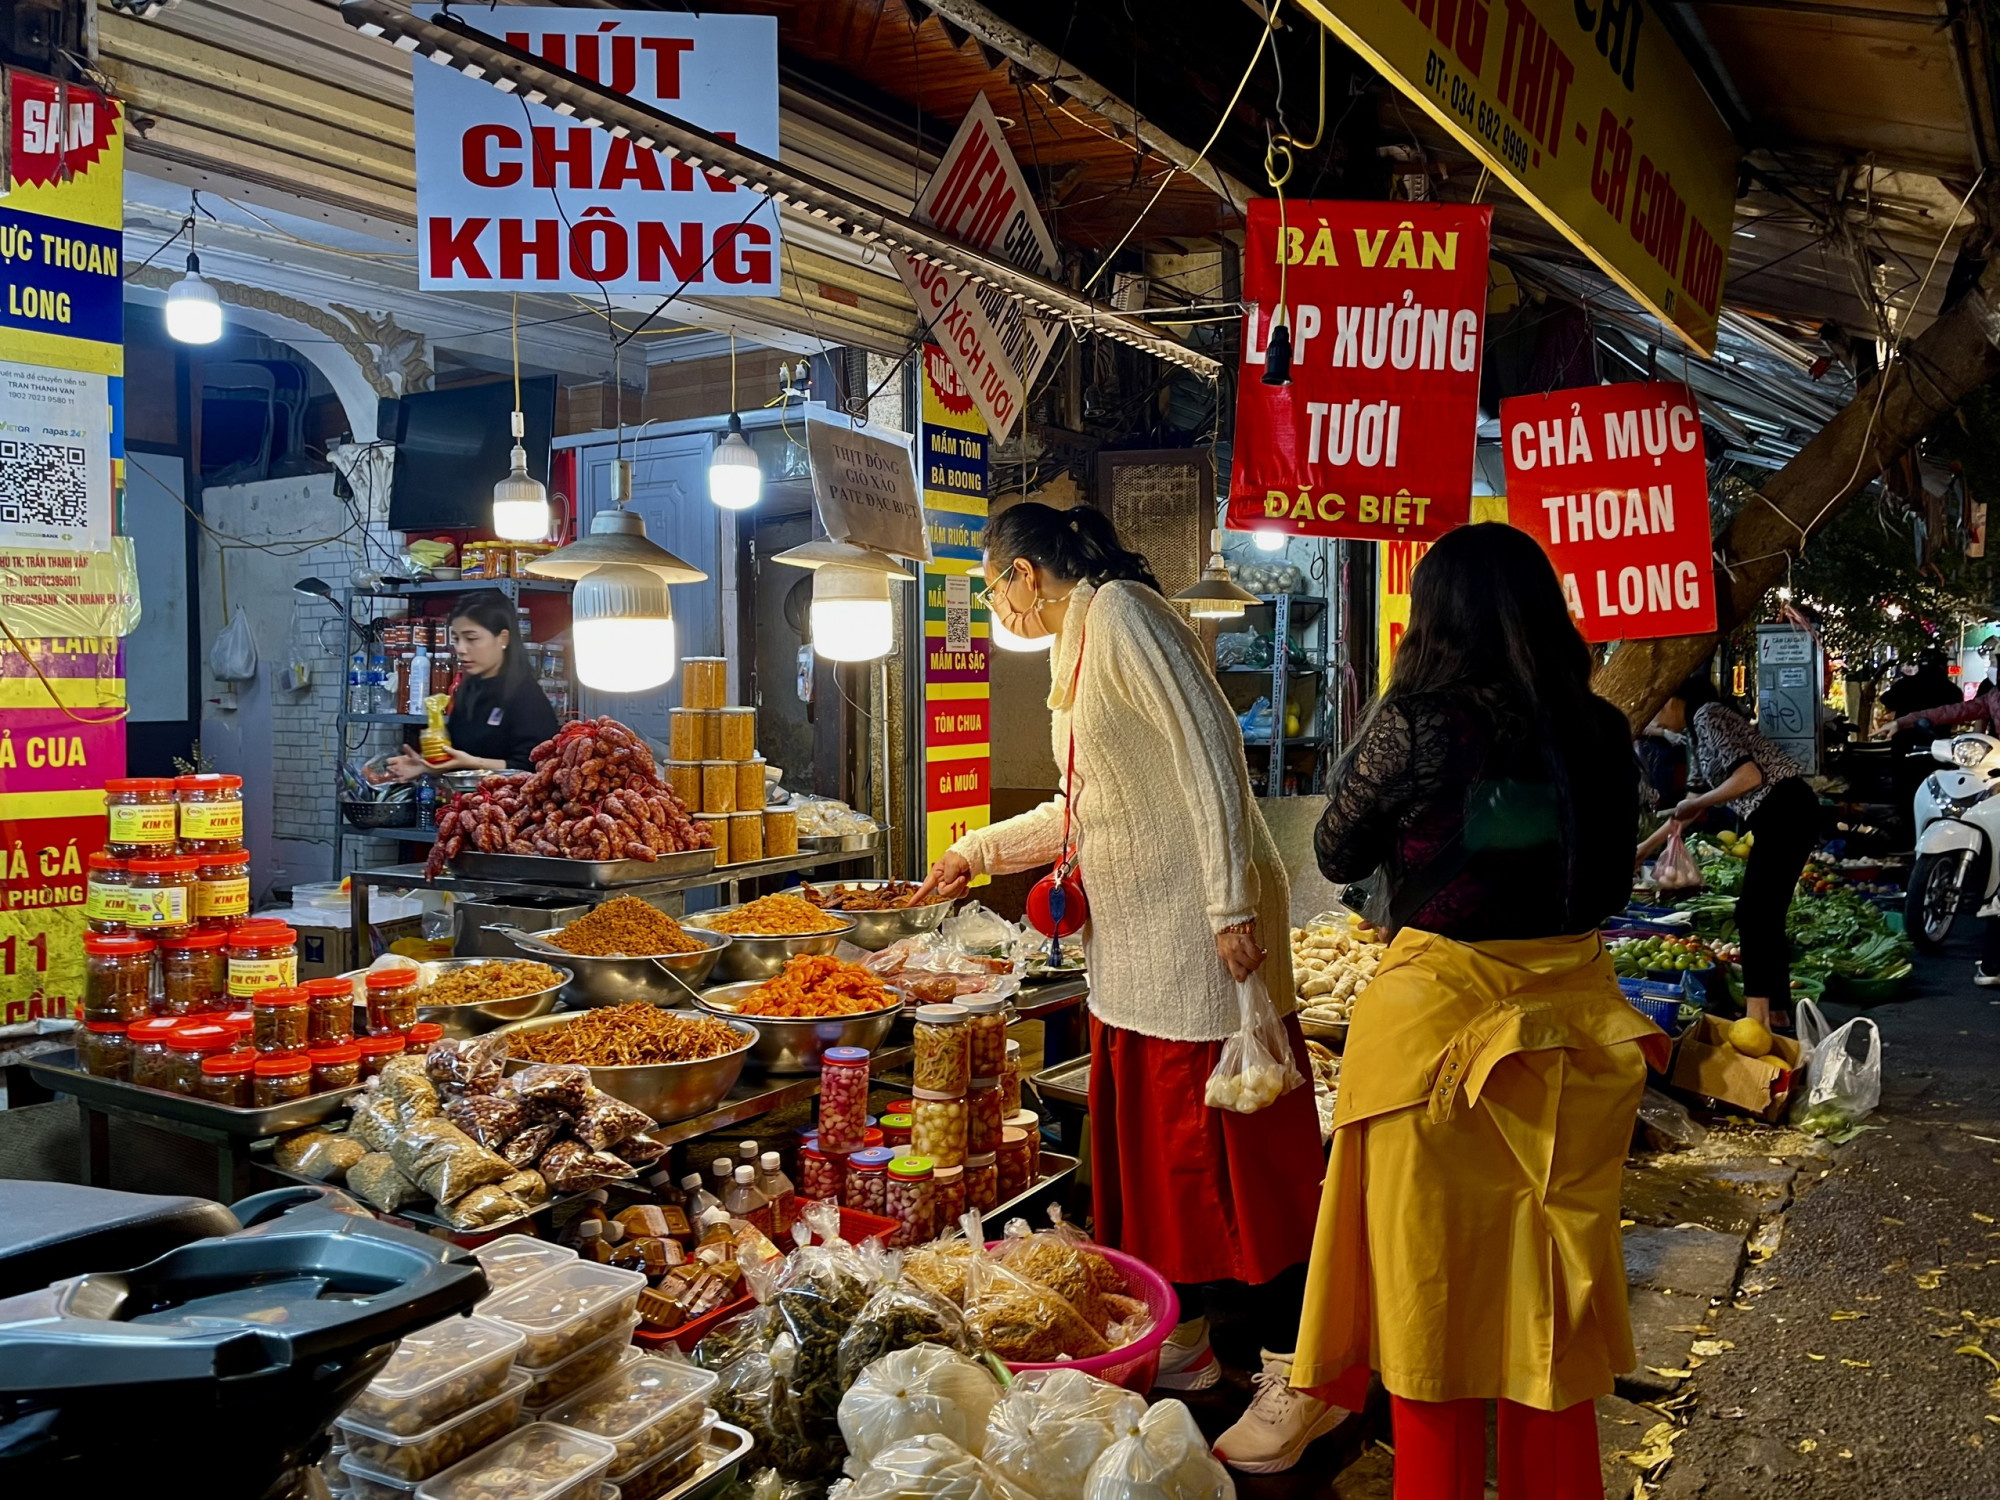 Các món ăn ở chợ Hàng Bè mang đậm hương vị và văn hóa của người Hà Nội. Bên cạnh đó, cuộc sống ngày càng bận rộn, sự tiện lợi từ các món ăn chế biến sẵn trong mâm cỗ ngày Rằm cũng là 'trợ thủ đắc lực cho những người nội trợ.